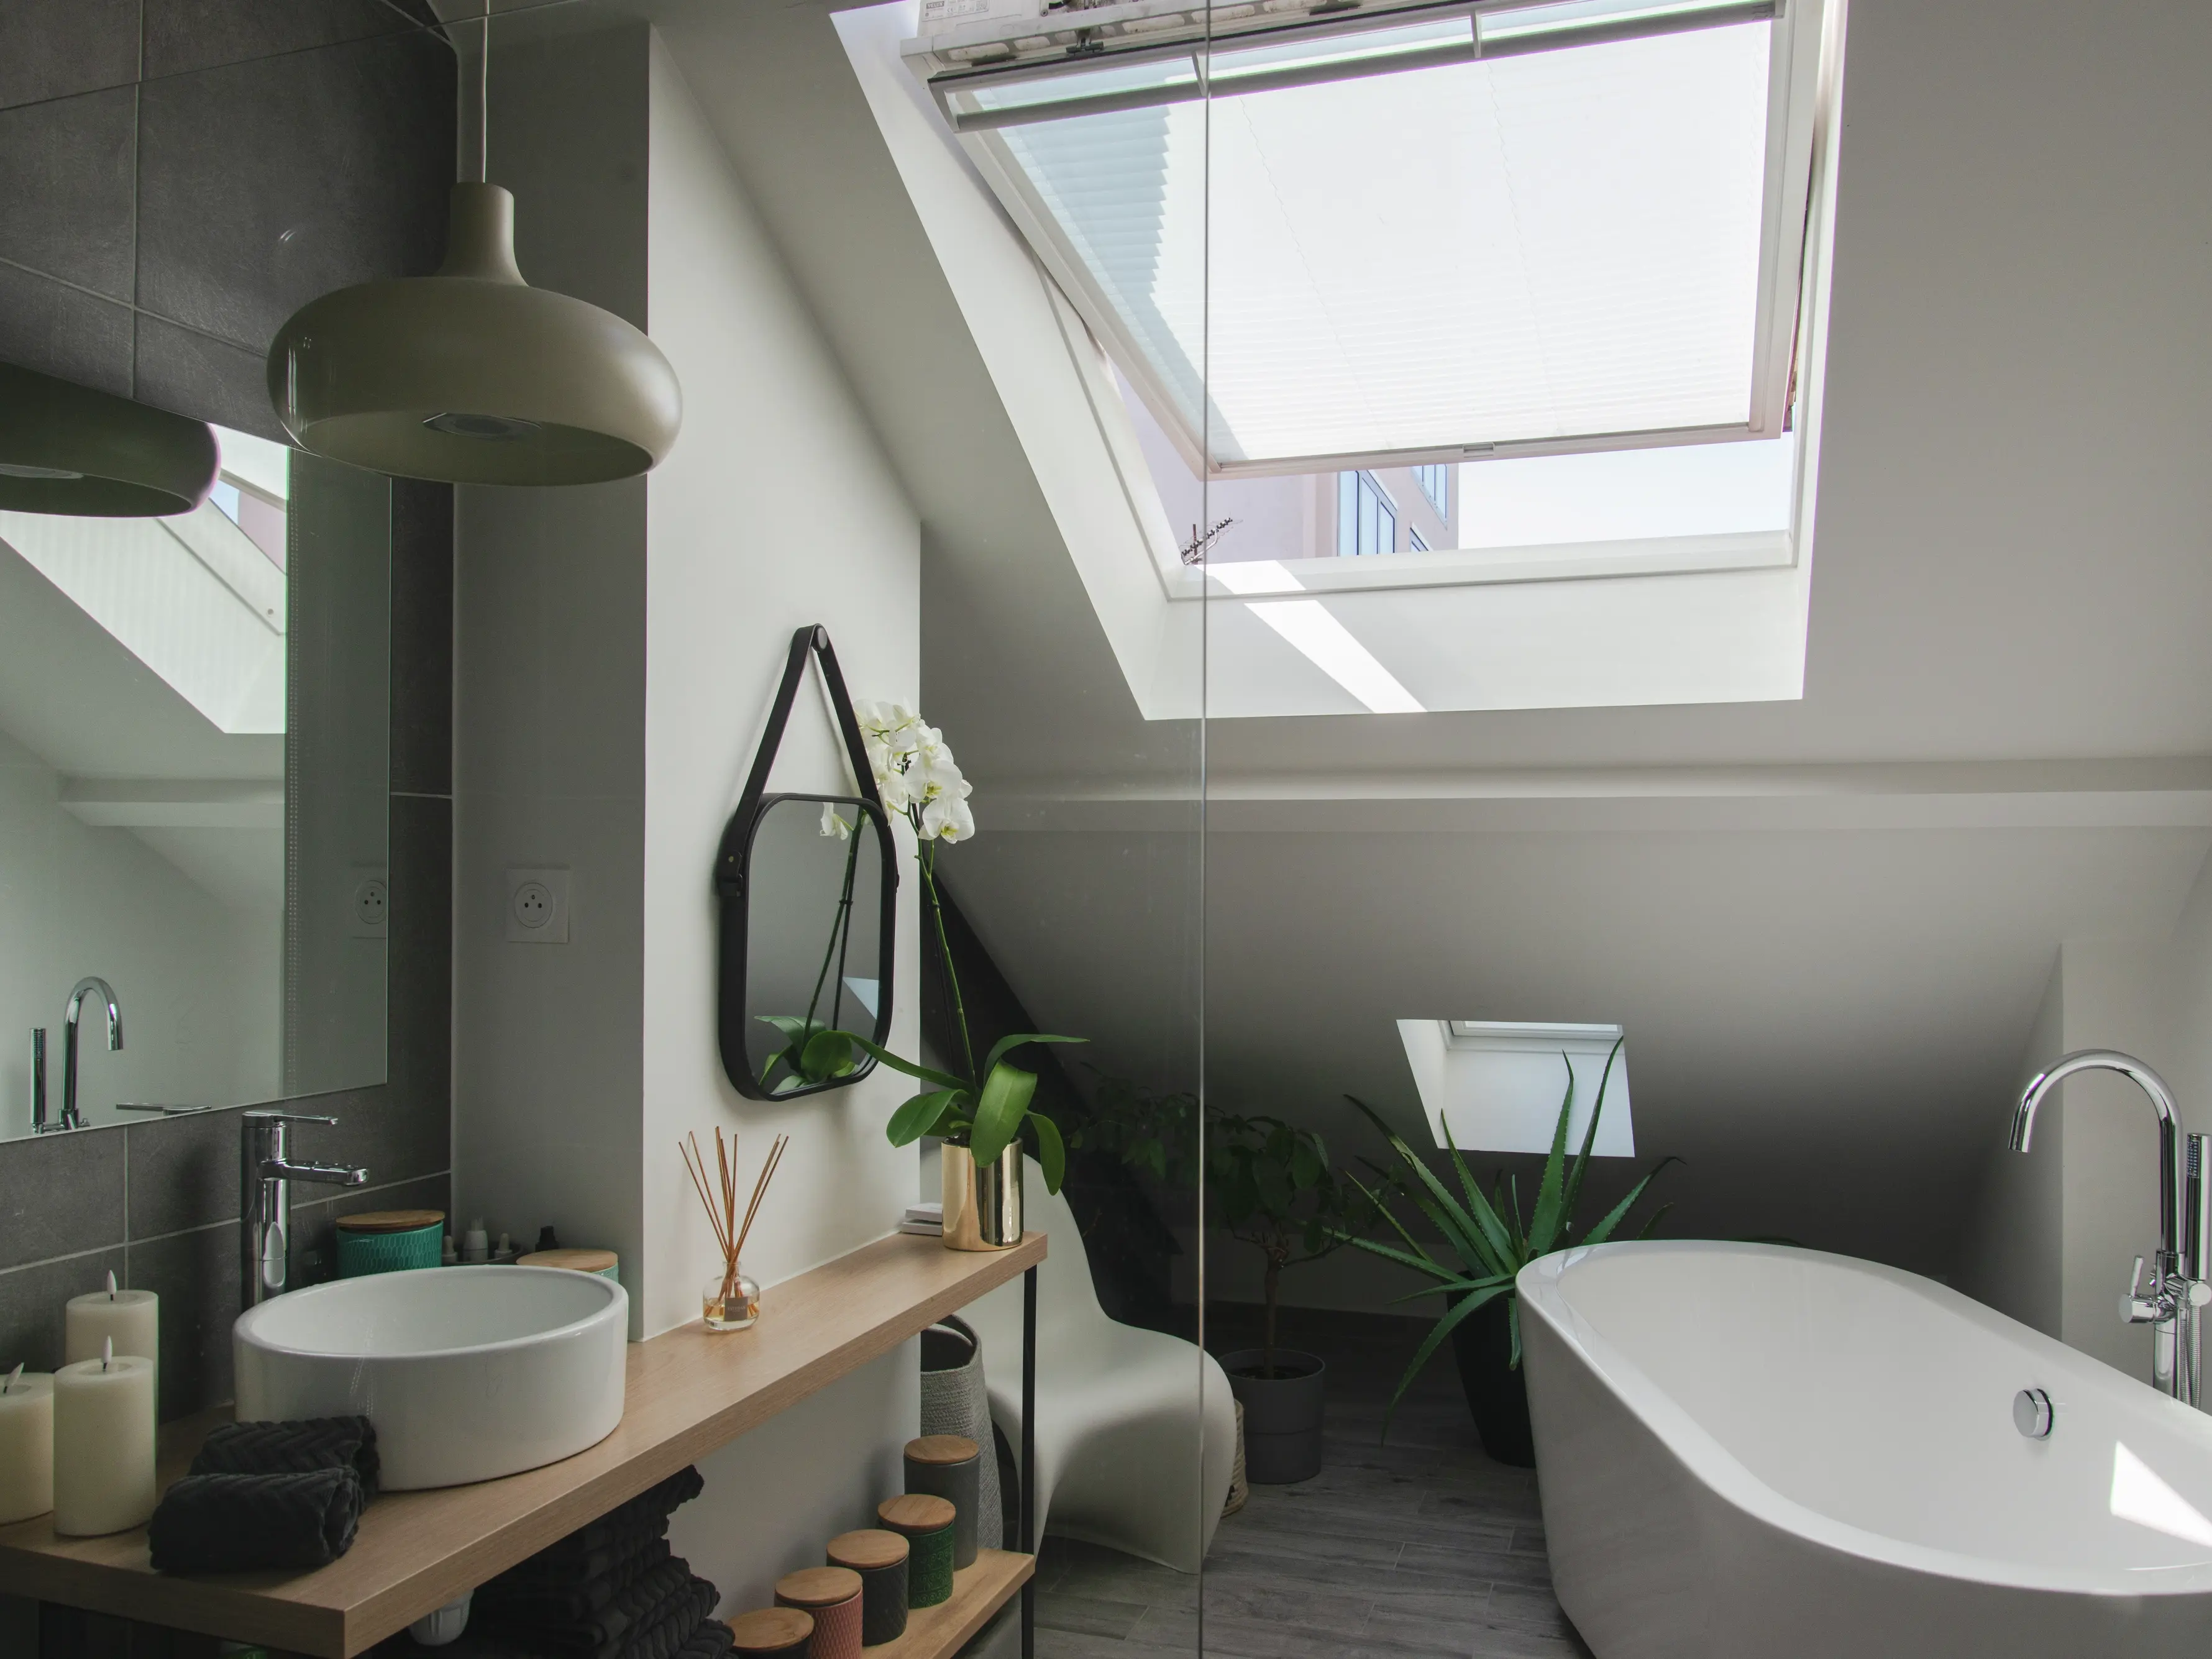 Salle de bain contemporaine avec fenêtre de toit VELUX, baignoire indépendante et meuble-lavabo en bois.